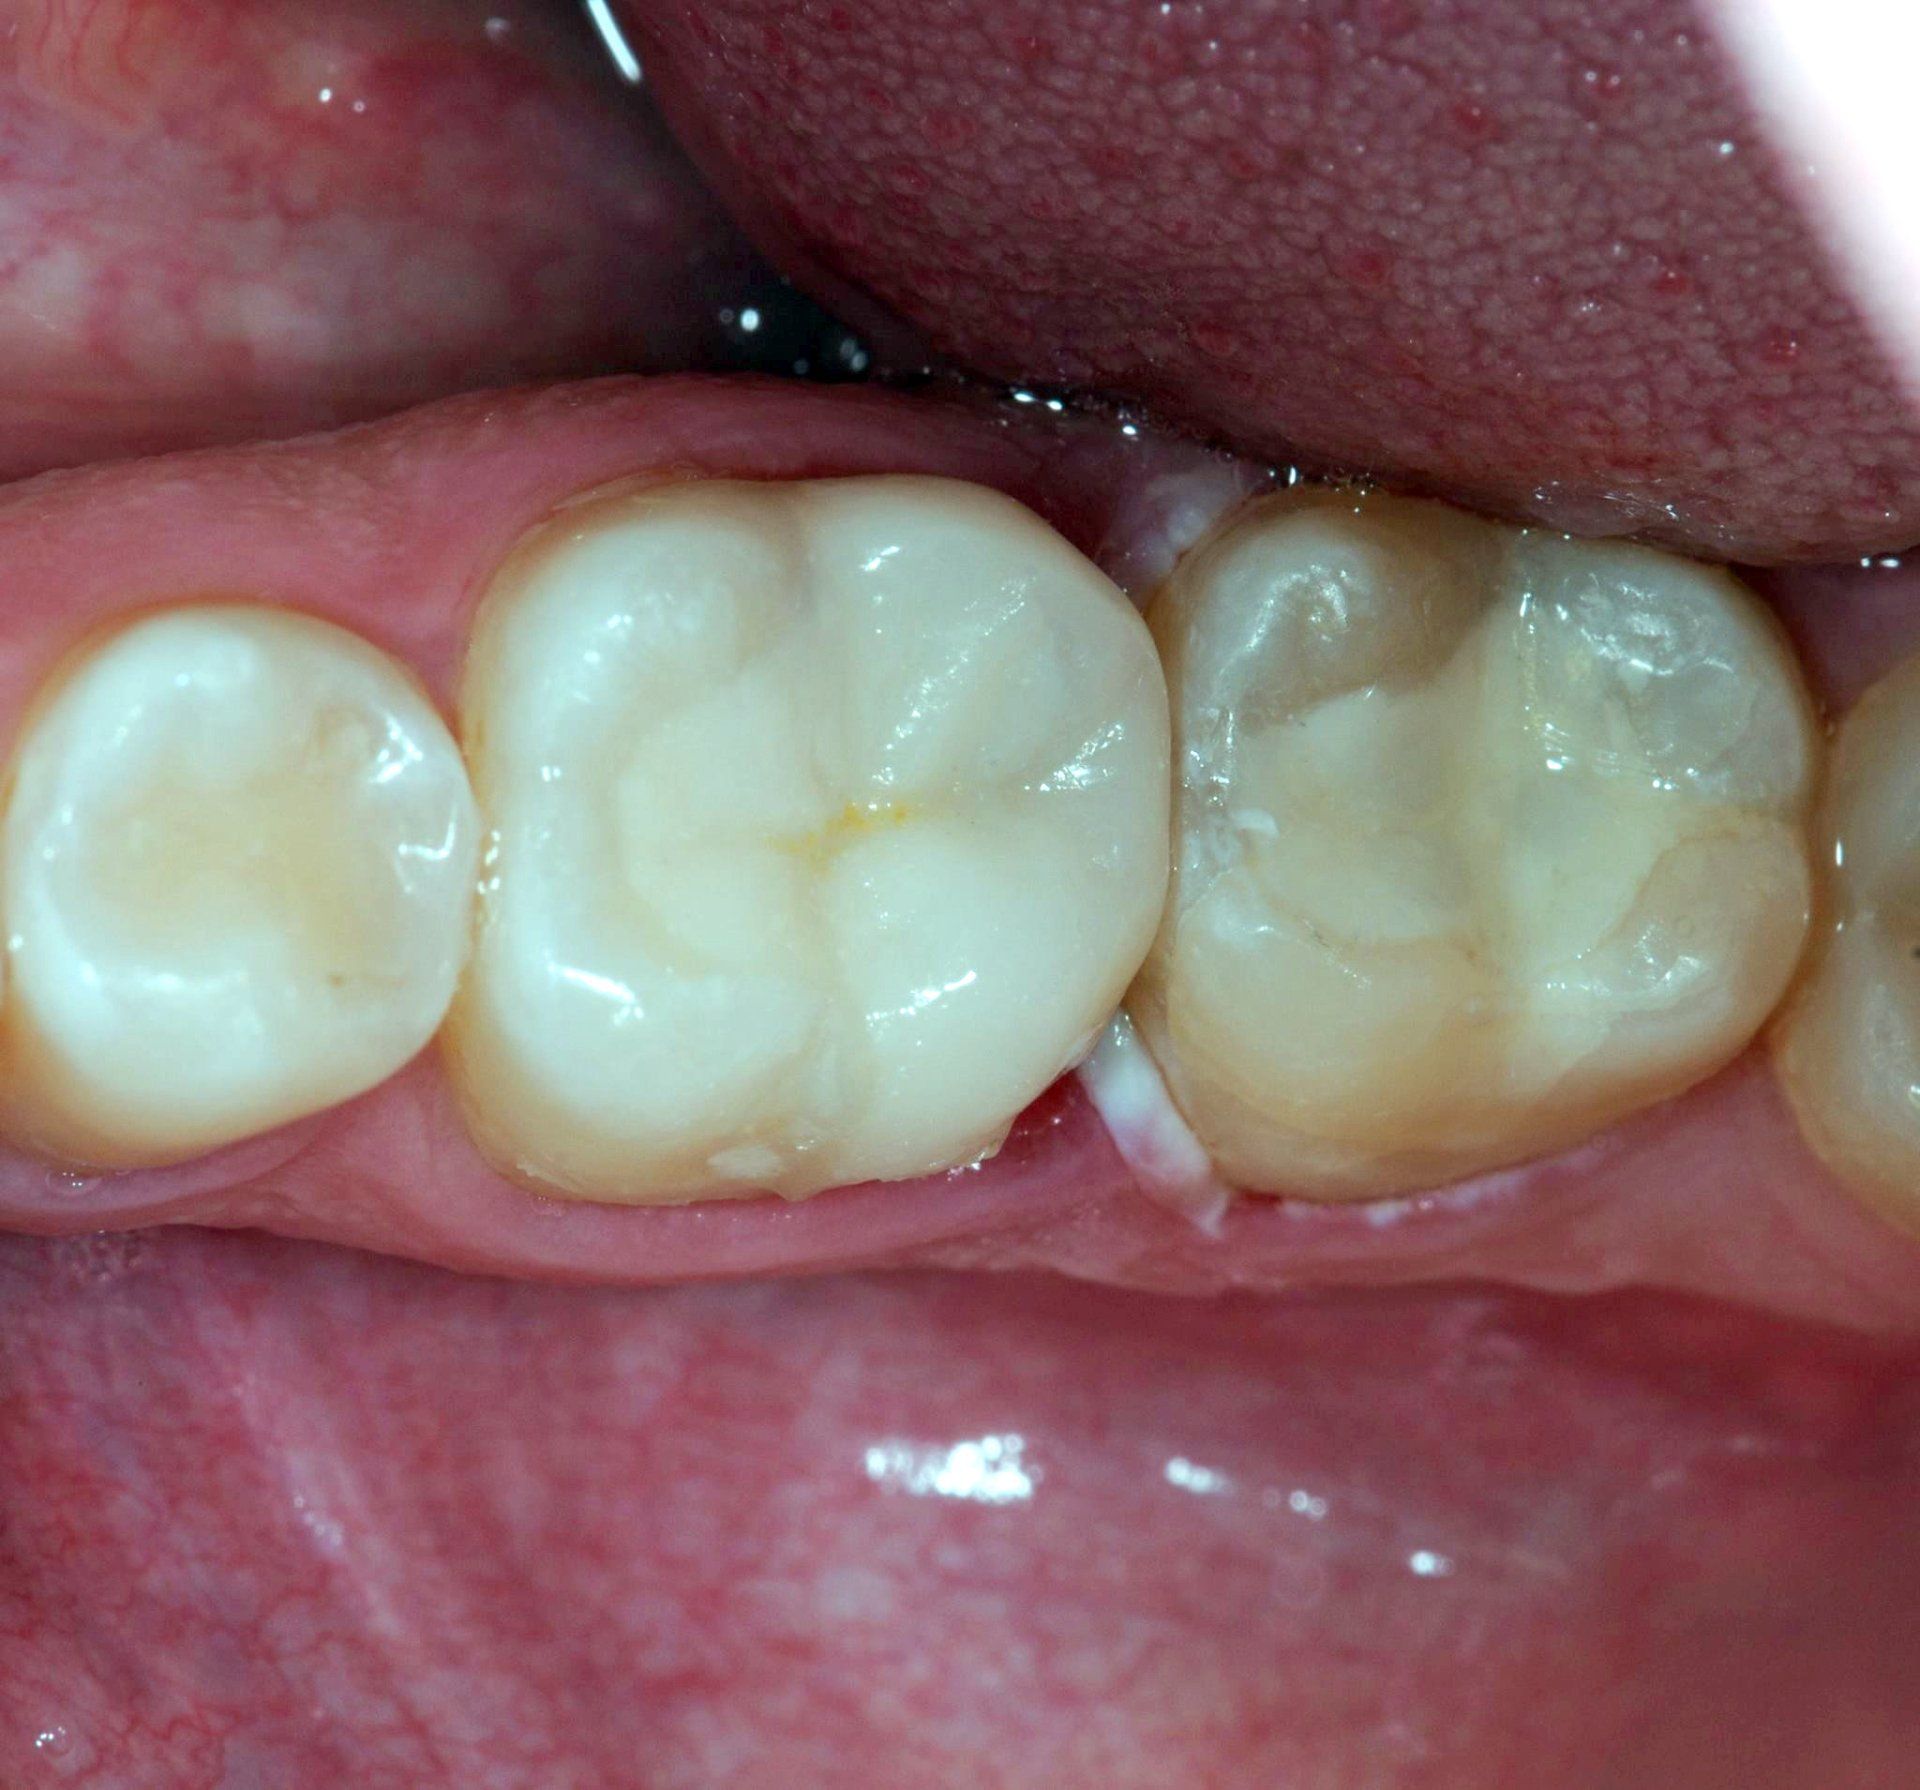 Dental restoration after 2